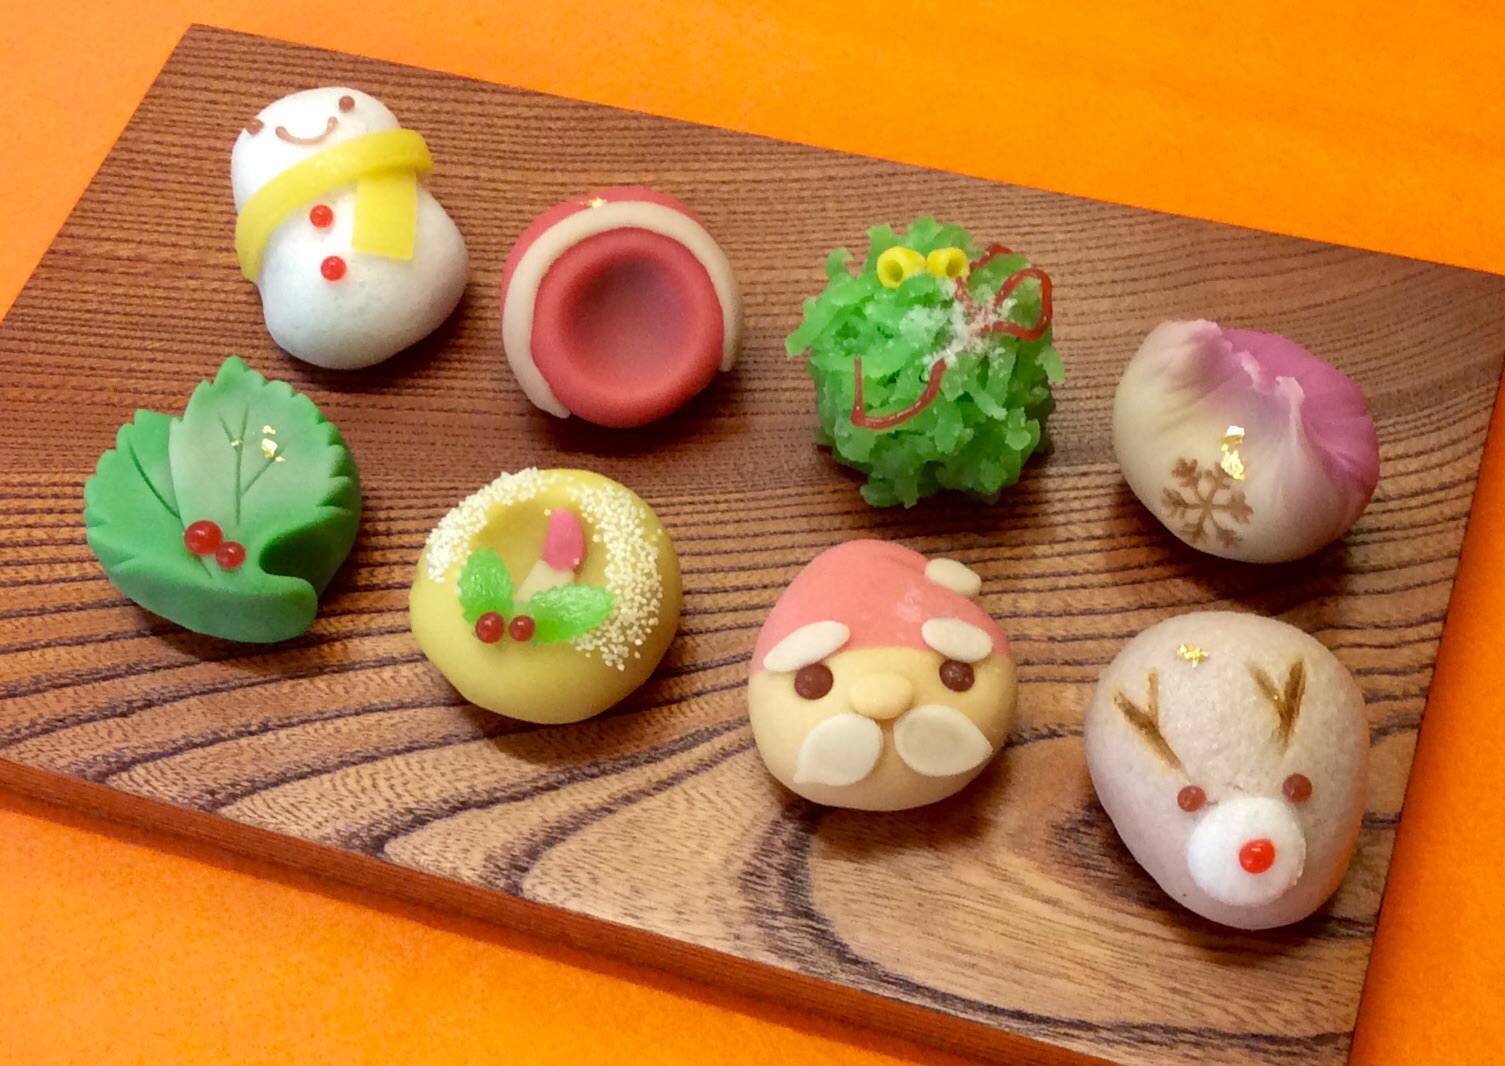 菓子処 喜久春 - クリスマスに可愛い和菓子でほっこりしませんか